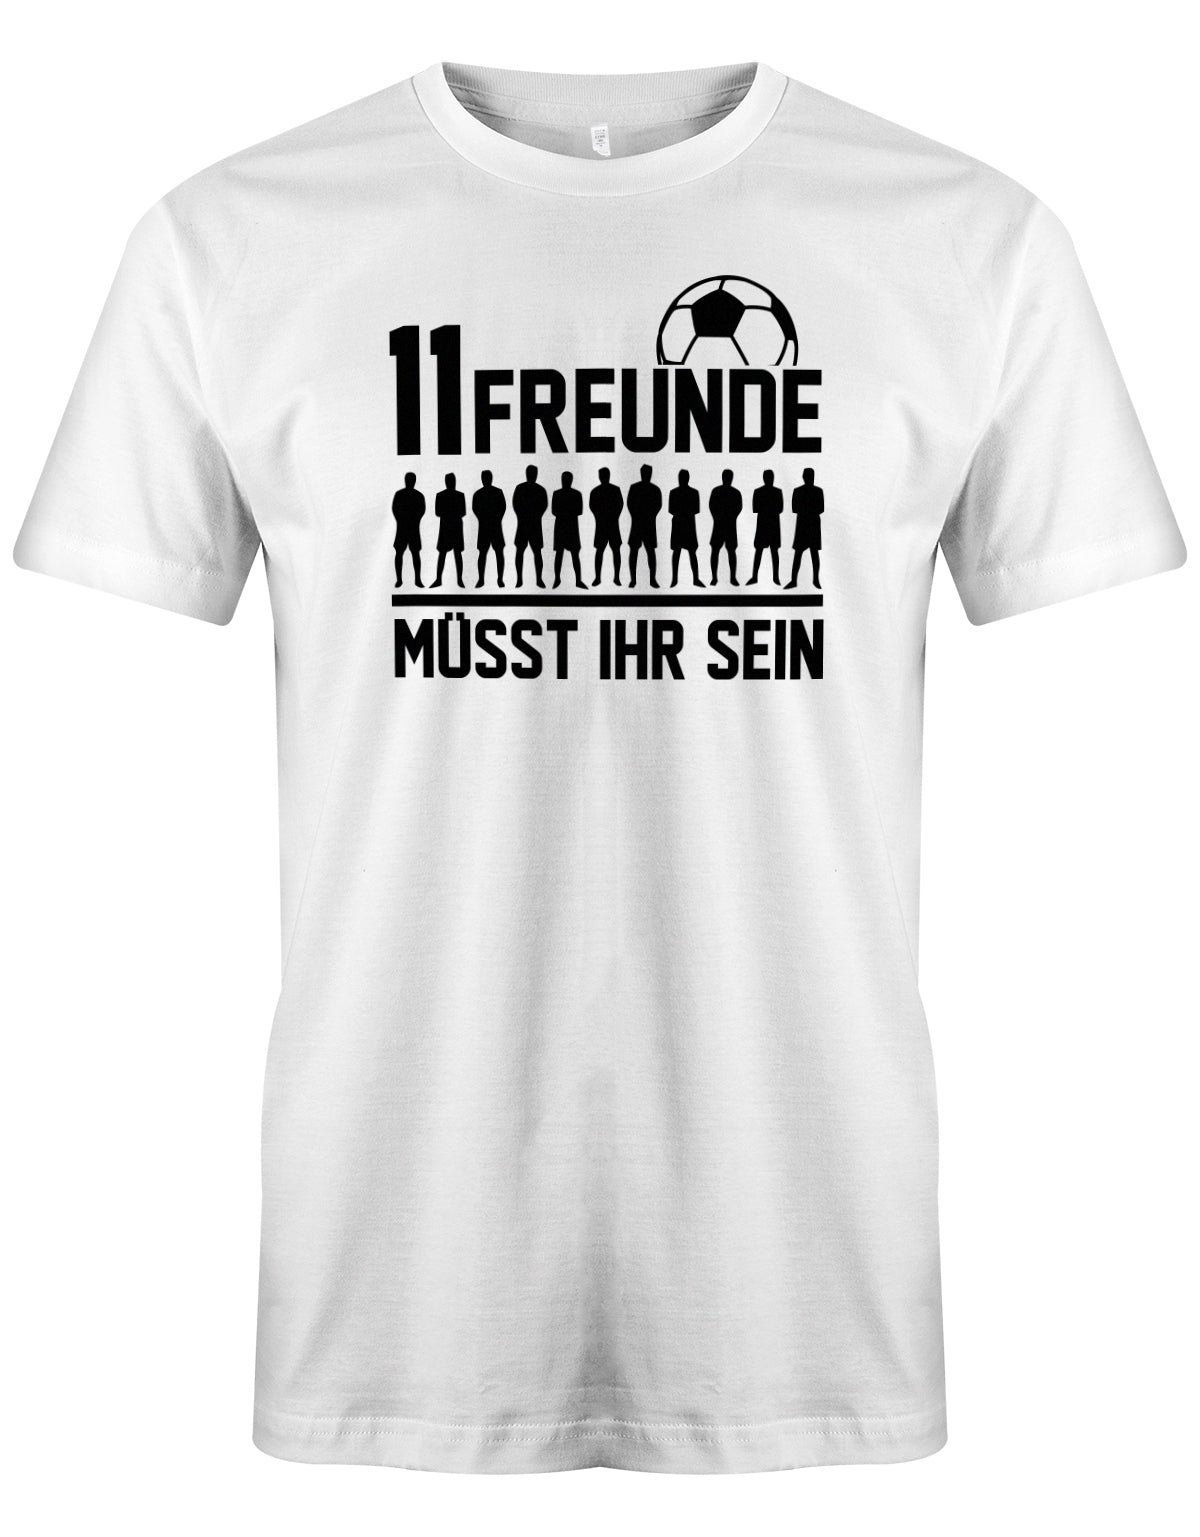 11 Freunde müsst ihr sein - Fußball - Herren T-Shirt Weiss